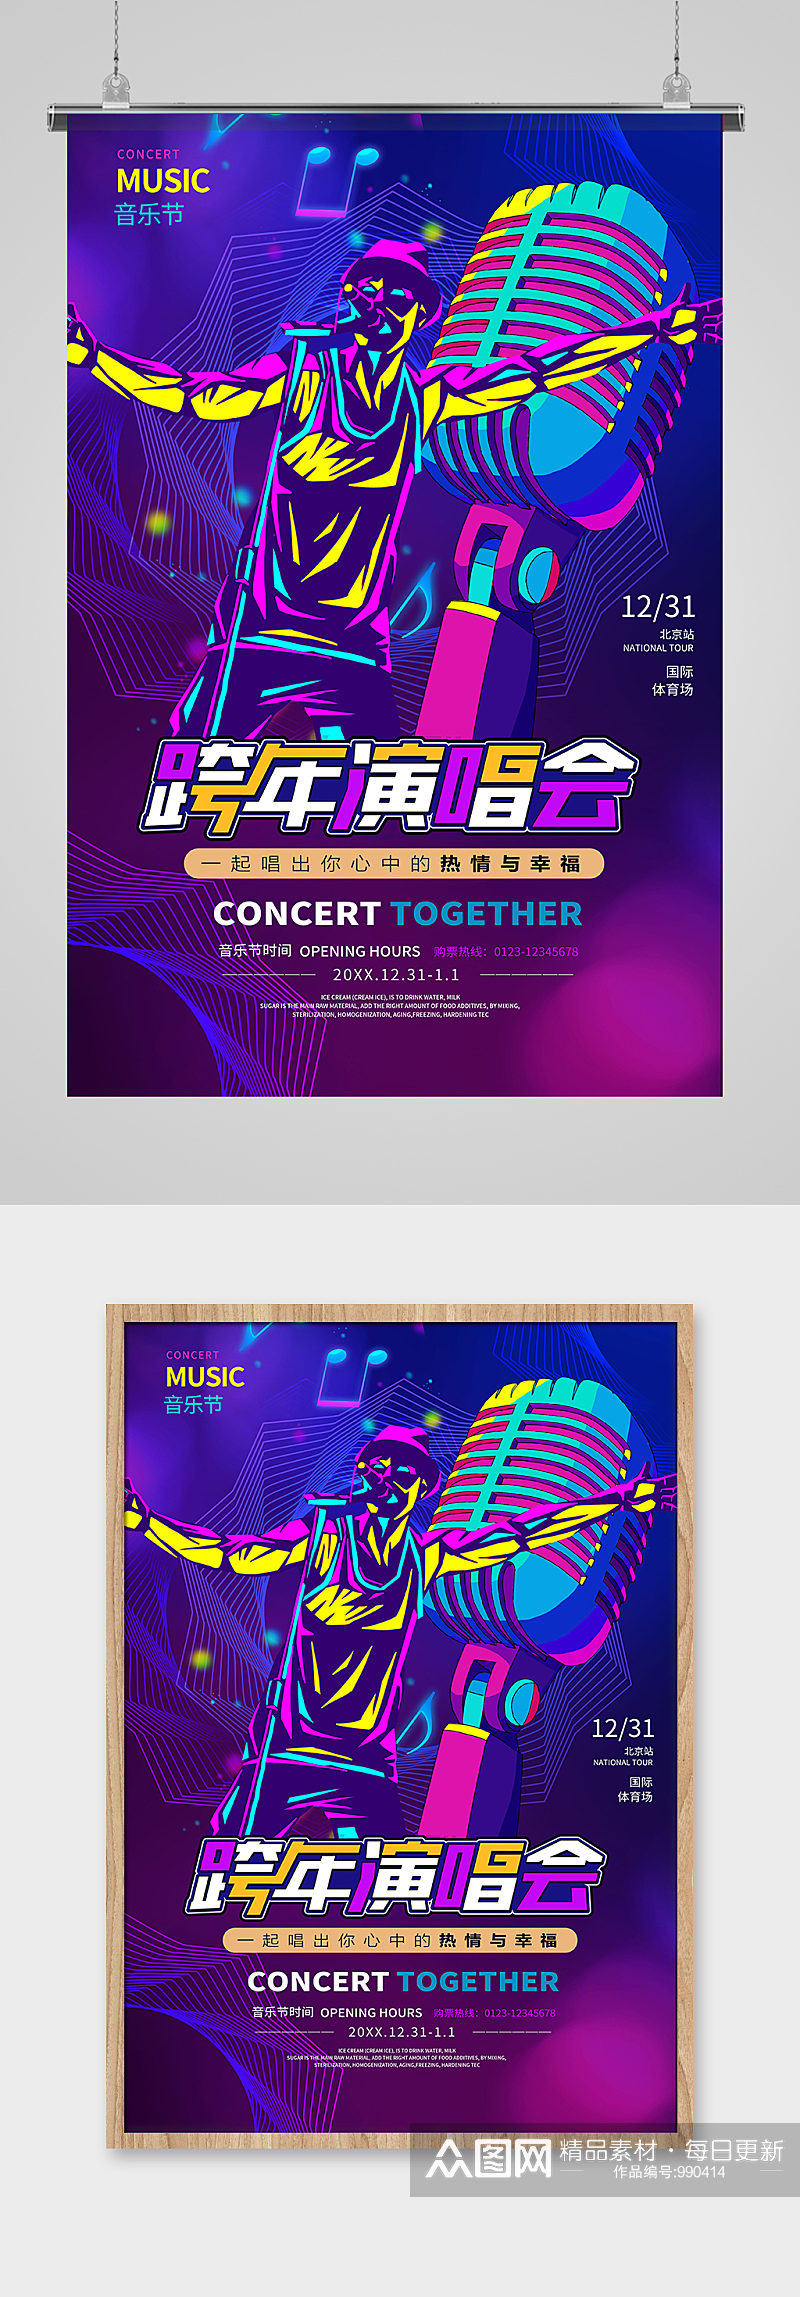 跨年音乐会跨年演唱会歌会紫色系简约海报素材